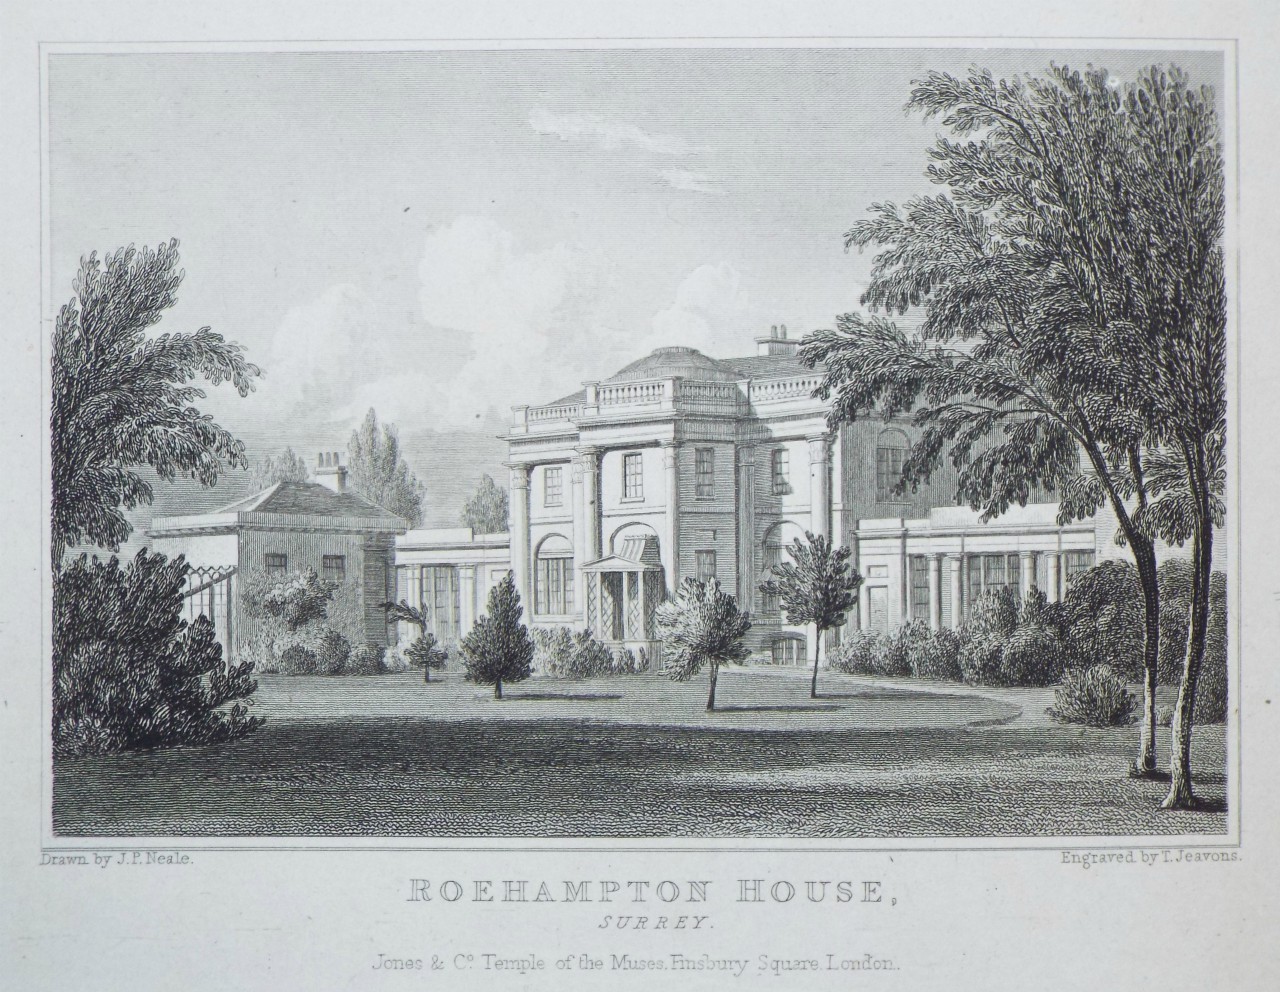 Print - Roehampton House, Surrey. - Jeavons